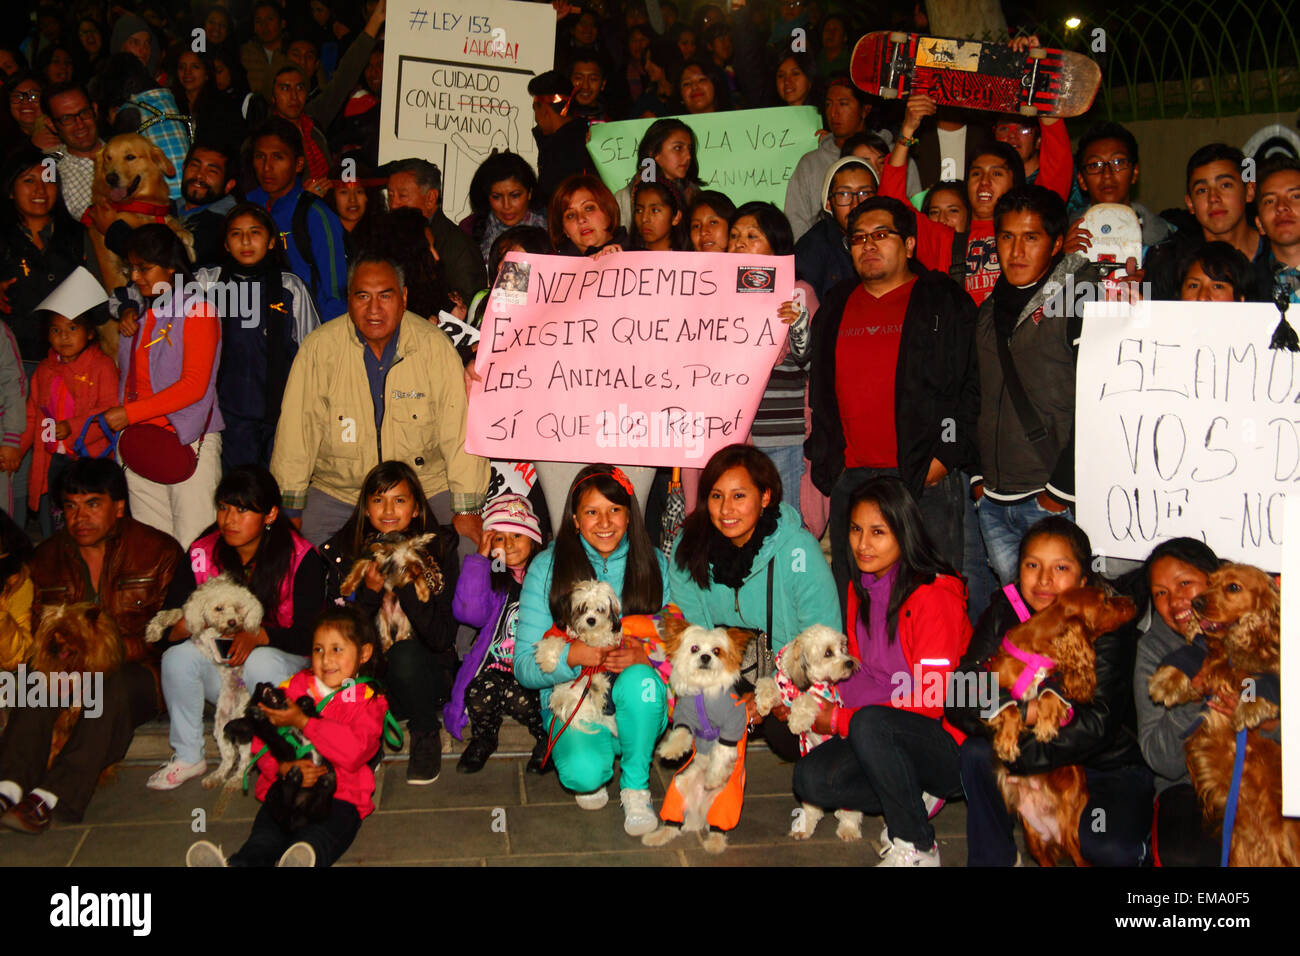 La Paz, Bolivia, 17 aprile 2015. I diritti degli animali gli attivisti prima a marzo per chiedere al governo di approvare le leggi che proteggono gli animali da abuso e la tratta di esseri umani e di aumentare le pene per coloro che sono giudicati colpevoli di crudeltà verso gli animali. Marche ha avuto luogo in diverse città in tutto il paese, in parte in reazione ad un caso recente a Cochabamba (dove una donna è stata filmata da un vicino di appendere il suo cane e la lapidazione a morte dopo la morte di due dei suoi polli) che ha causato sdegno. Credito: James Brunker/Alamy Live News Foto Stock